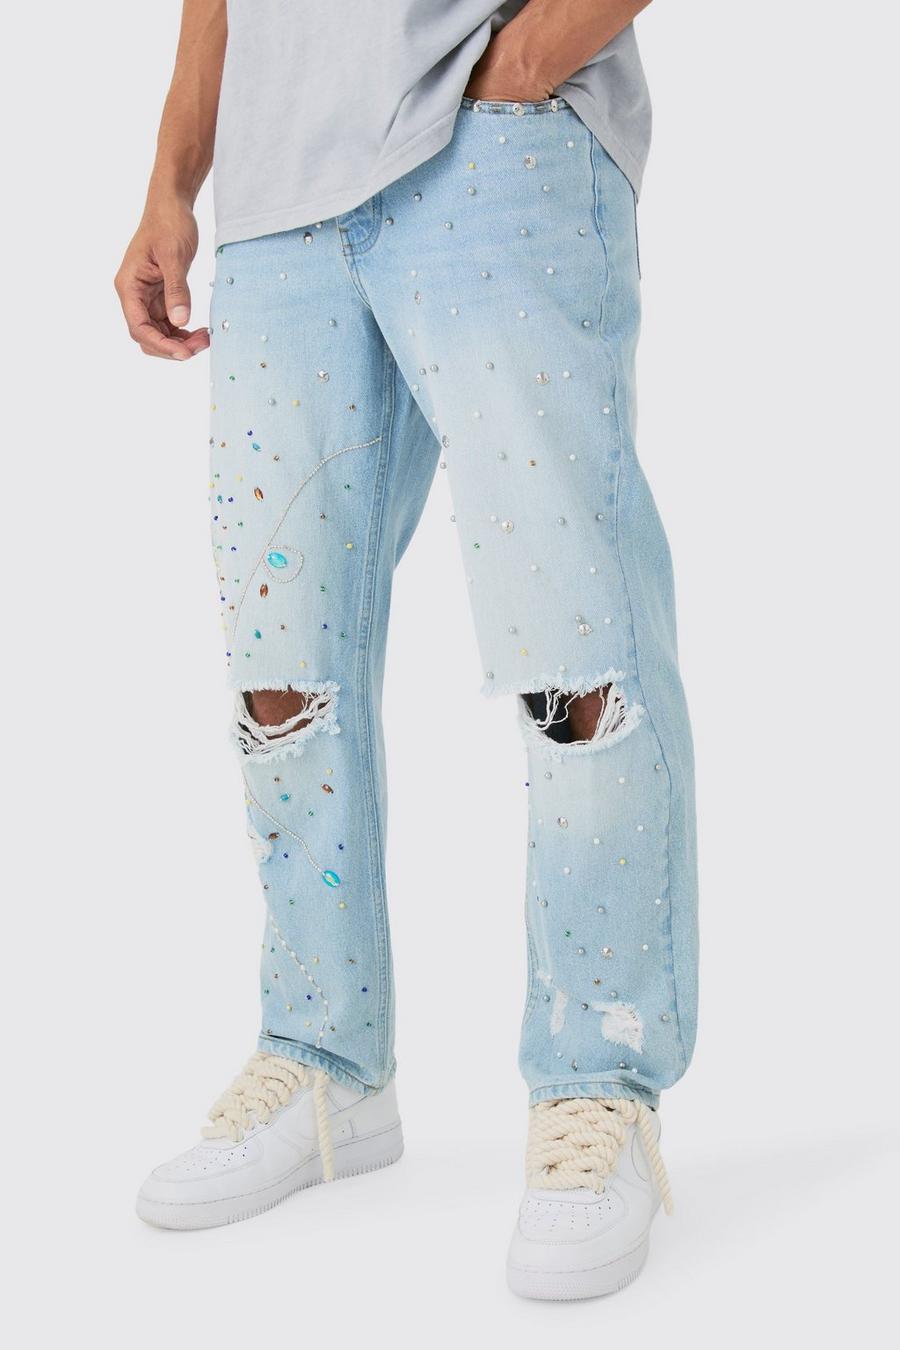 Lockere verzierte Jeans in Hellblau, Light blue